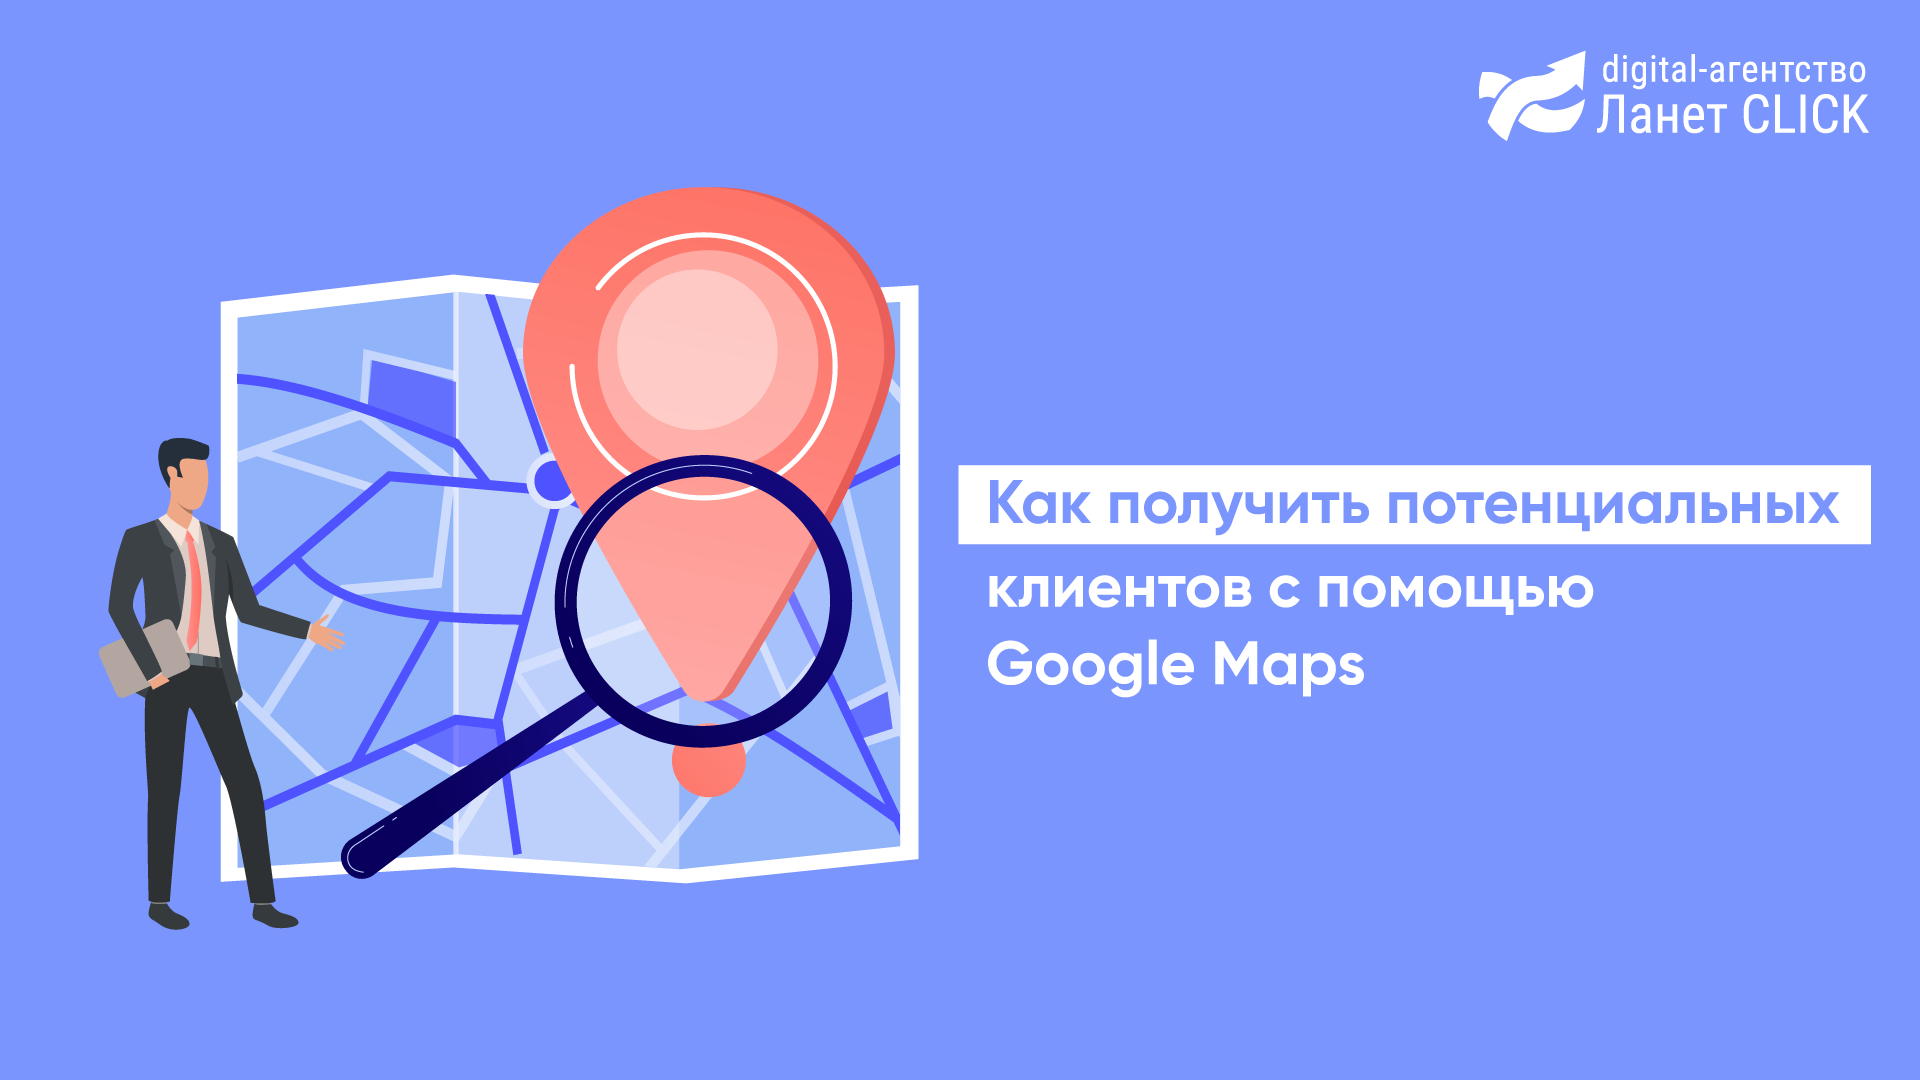 Как получить потенциальных клиентов с помощью Google Maps